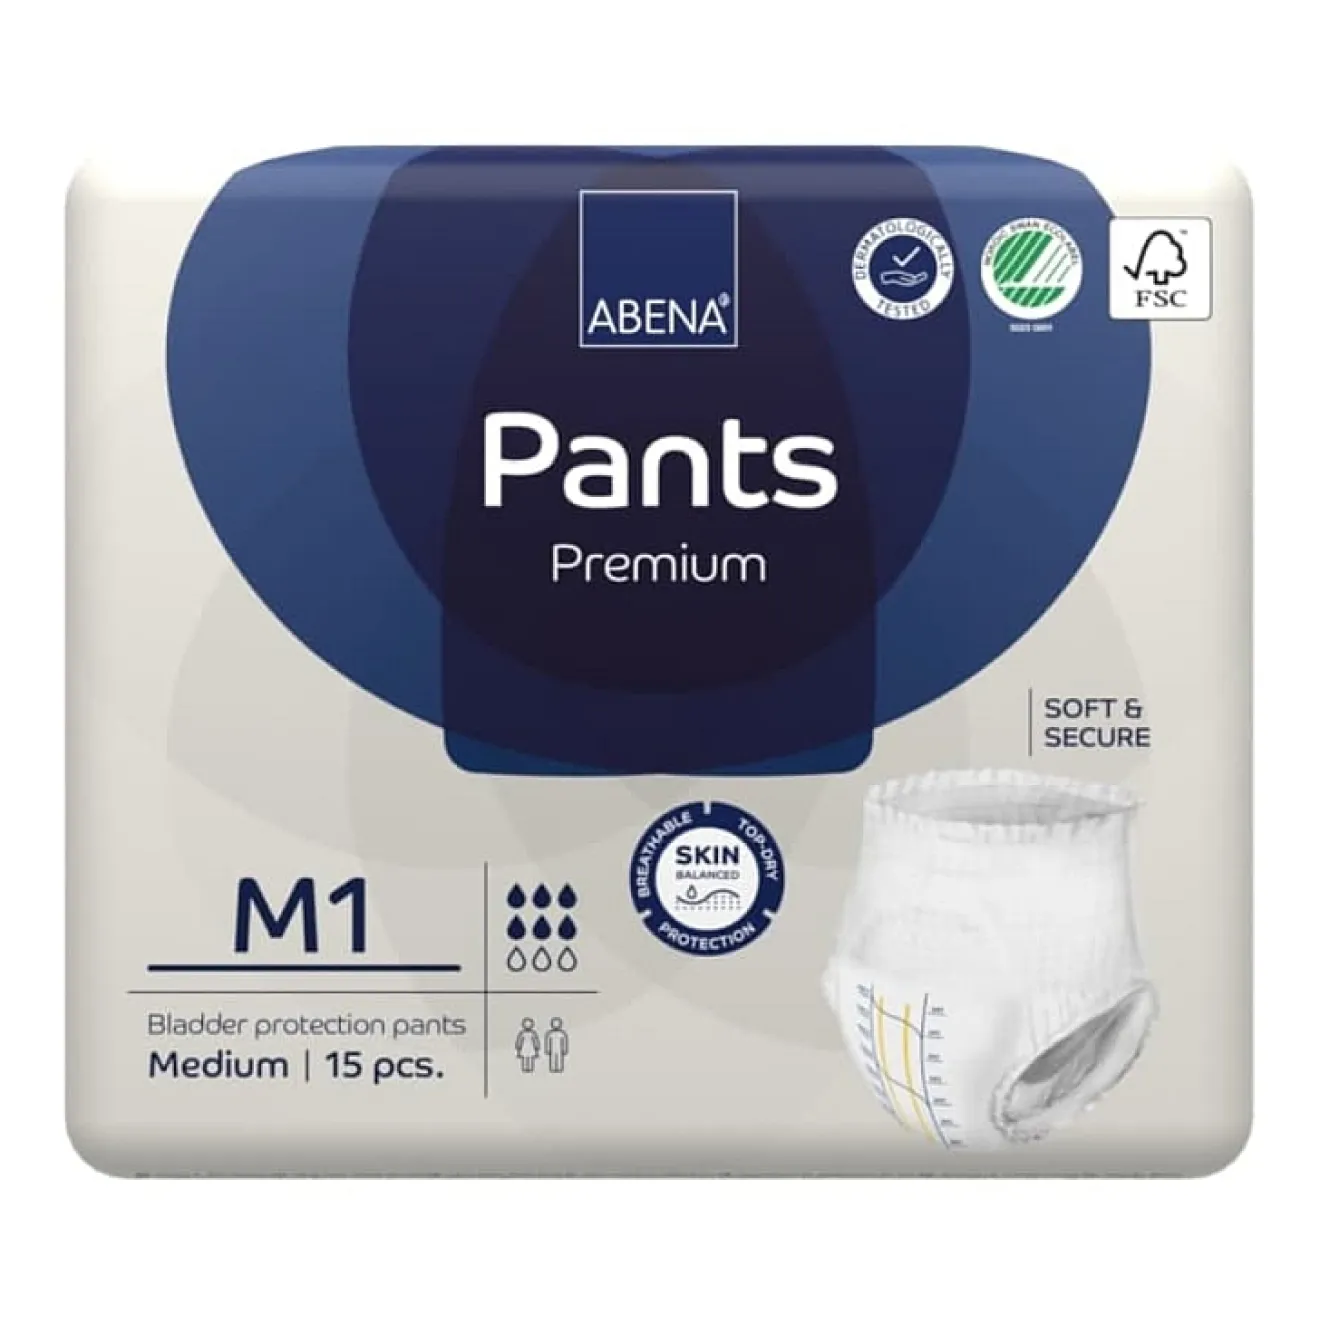 ABENA Pants Premium M1 6x15 ST